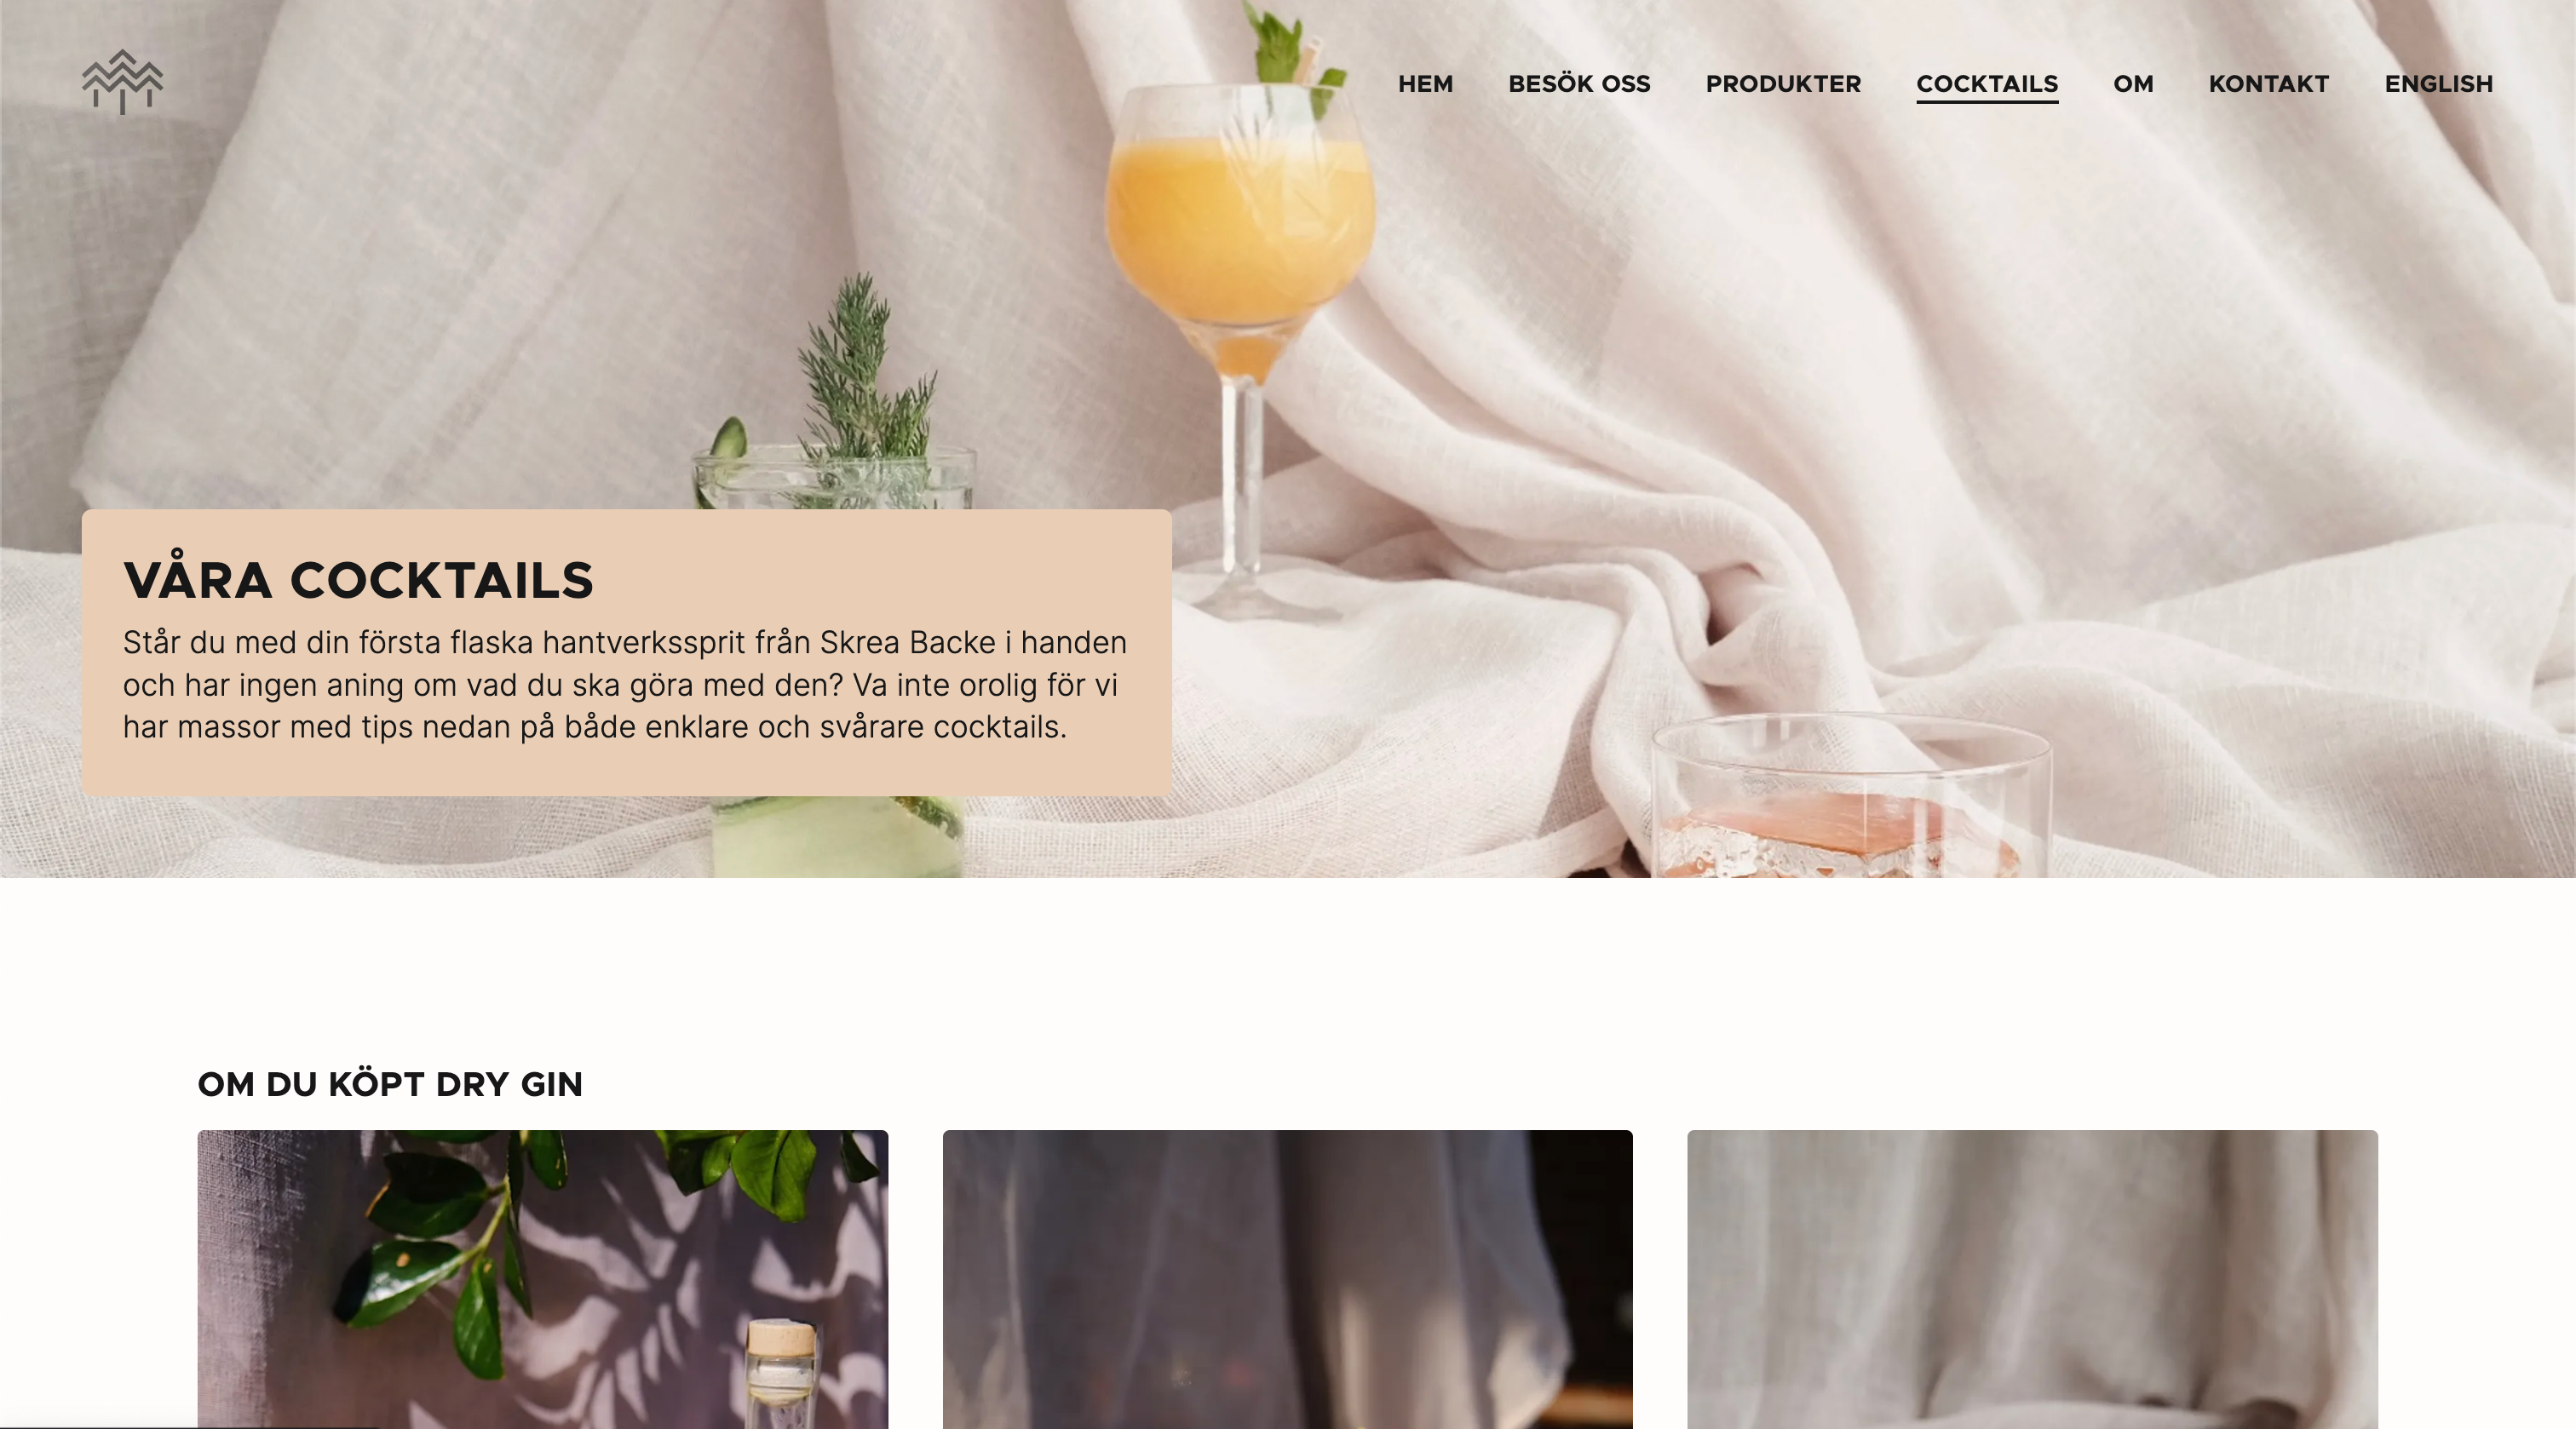 Screenshot Skrea Backe Destilleri's cocktails page.